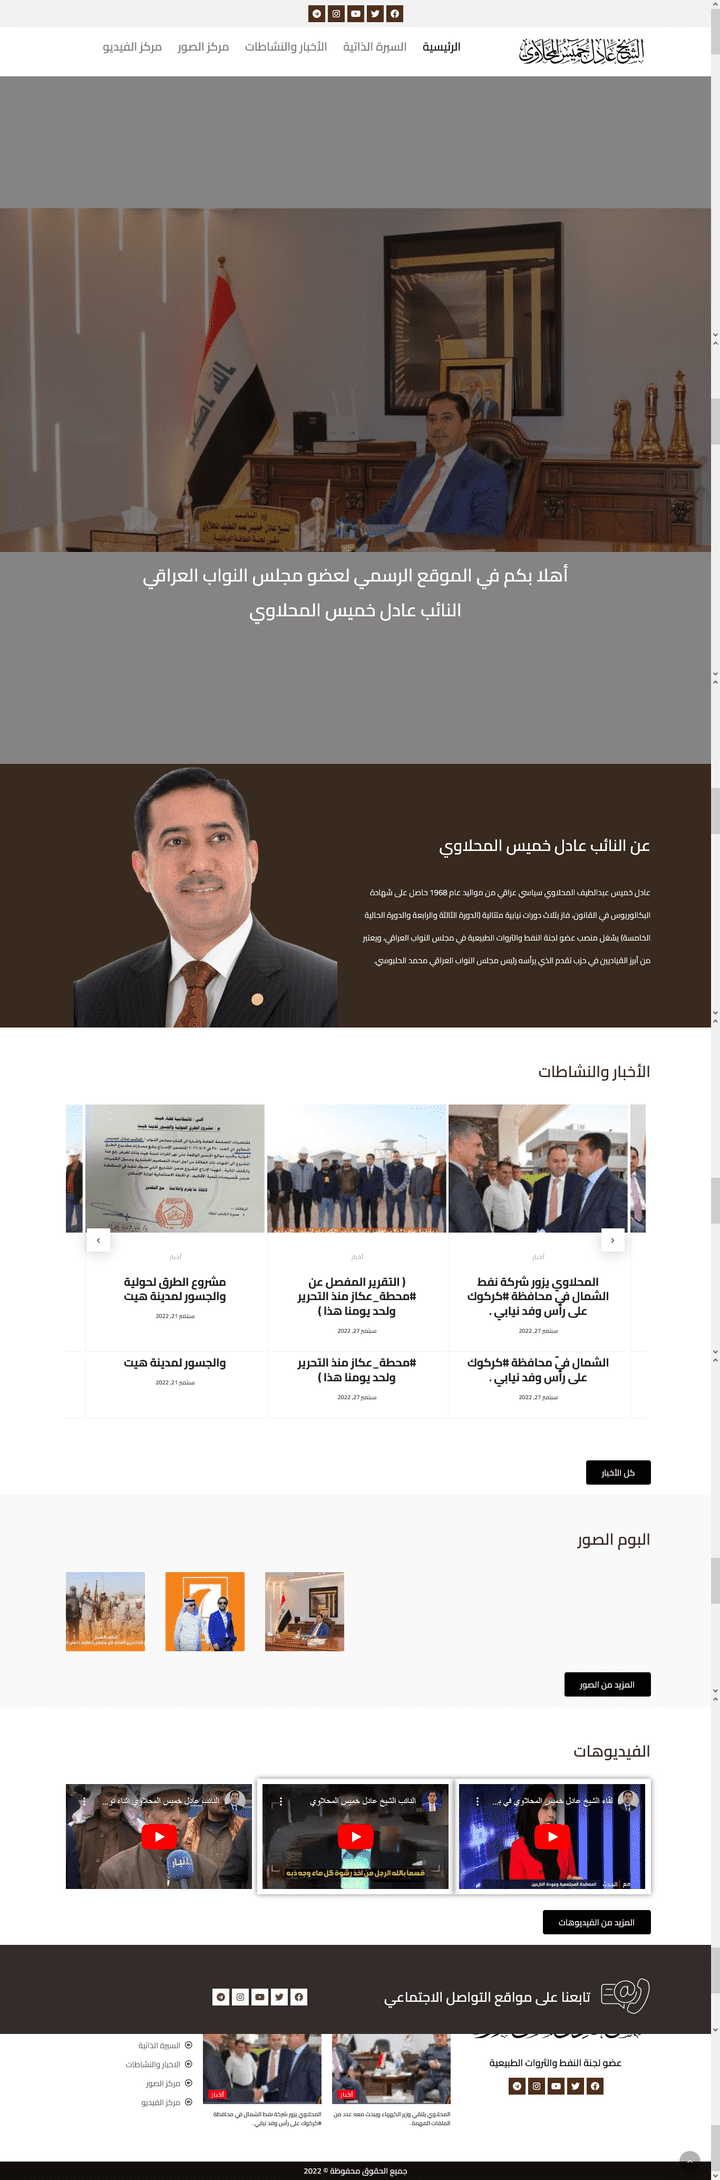 الموقع الرسمي للنائب العراقي عادل خميس المحلاوي